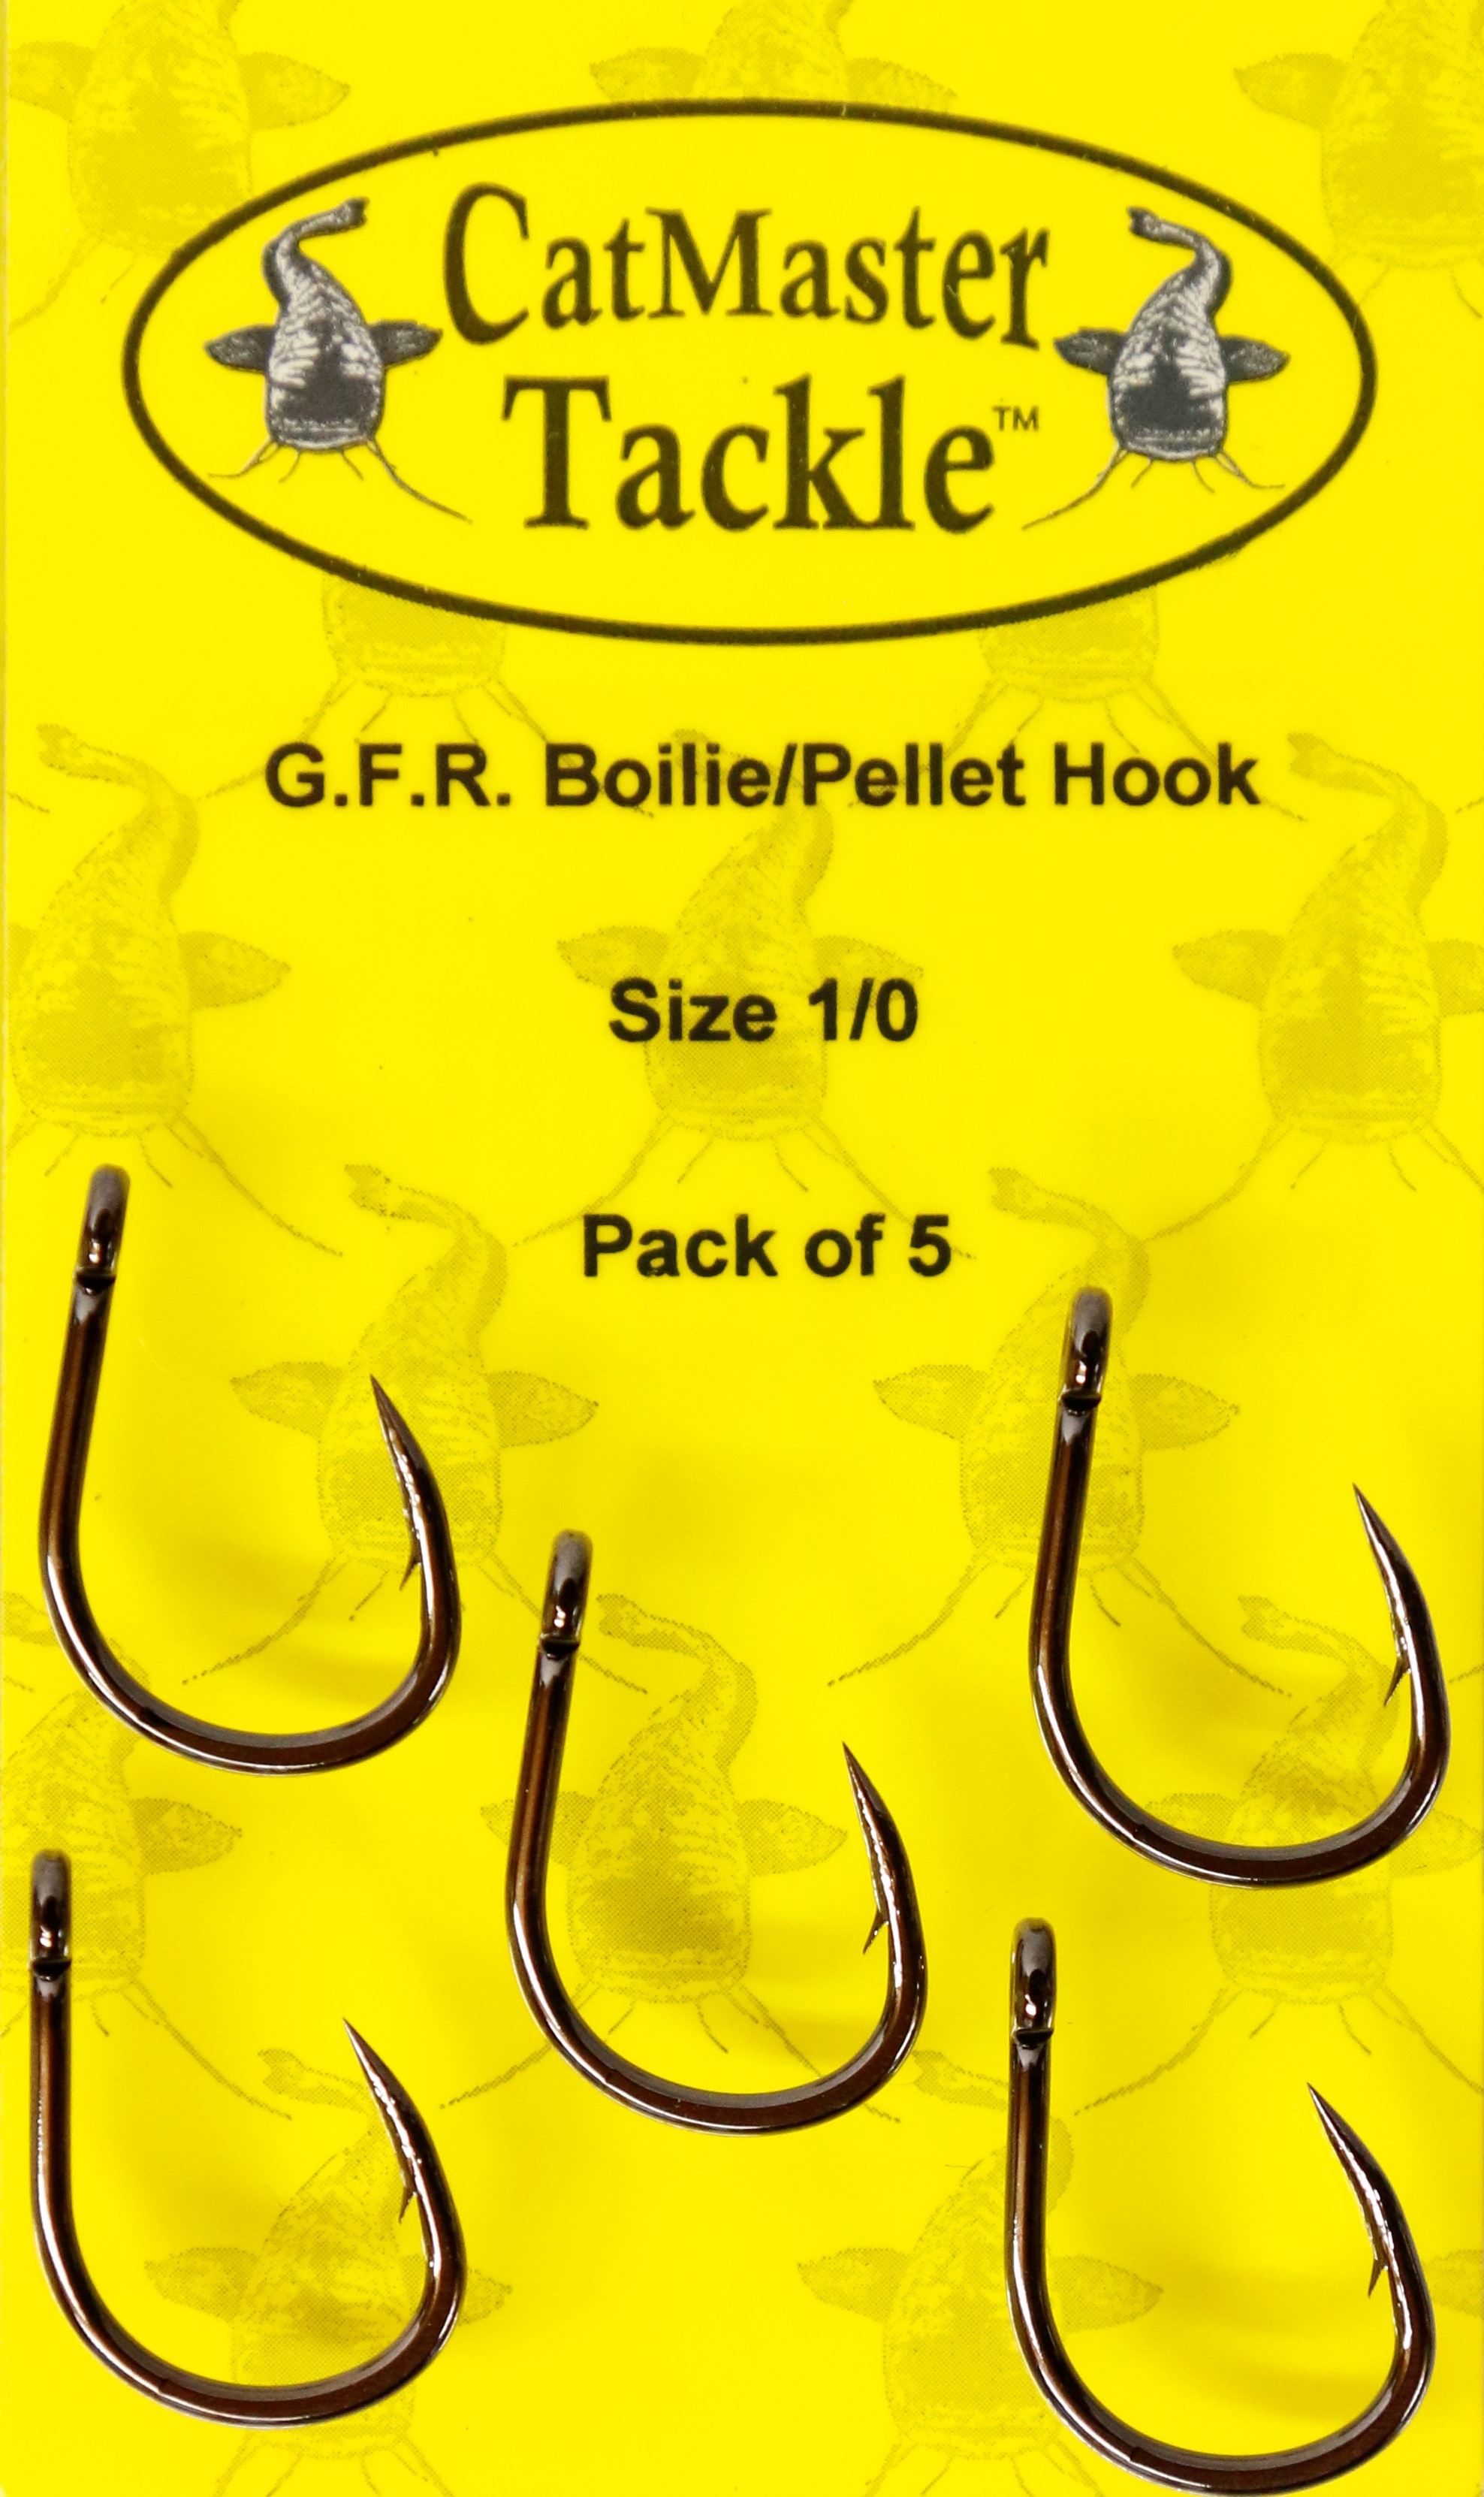 CatMaster Tackle GFR Boilie/Pellet Hook Size 1/0